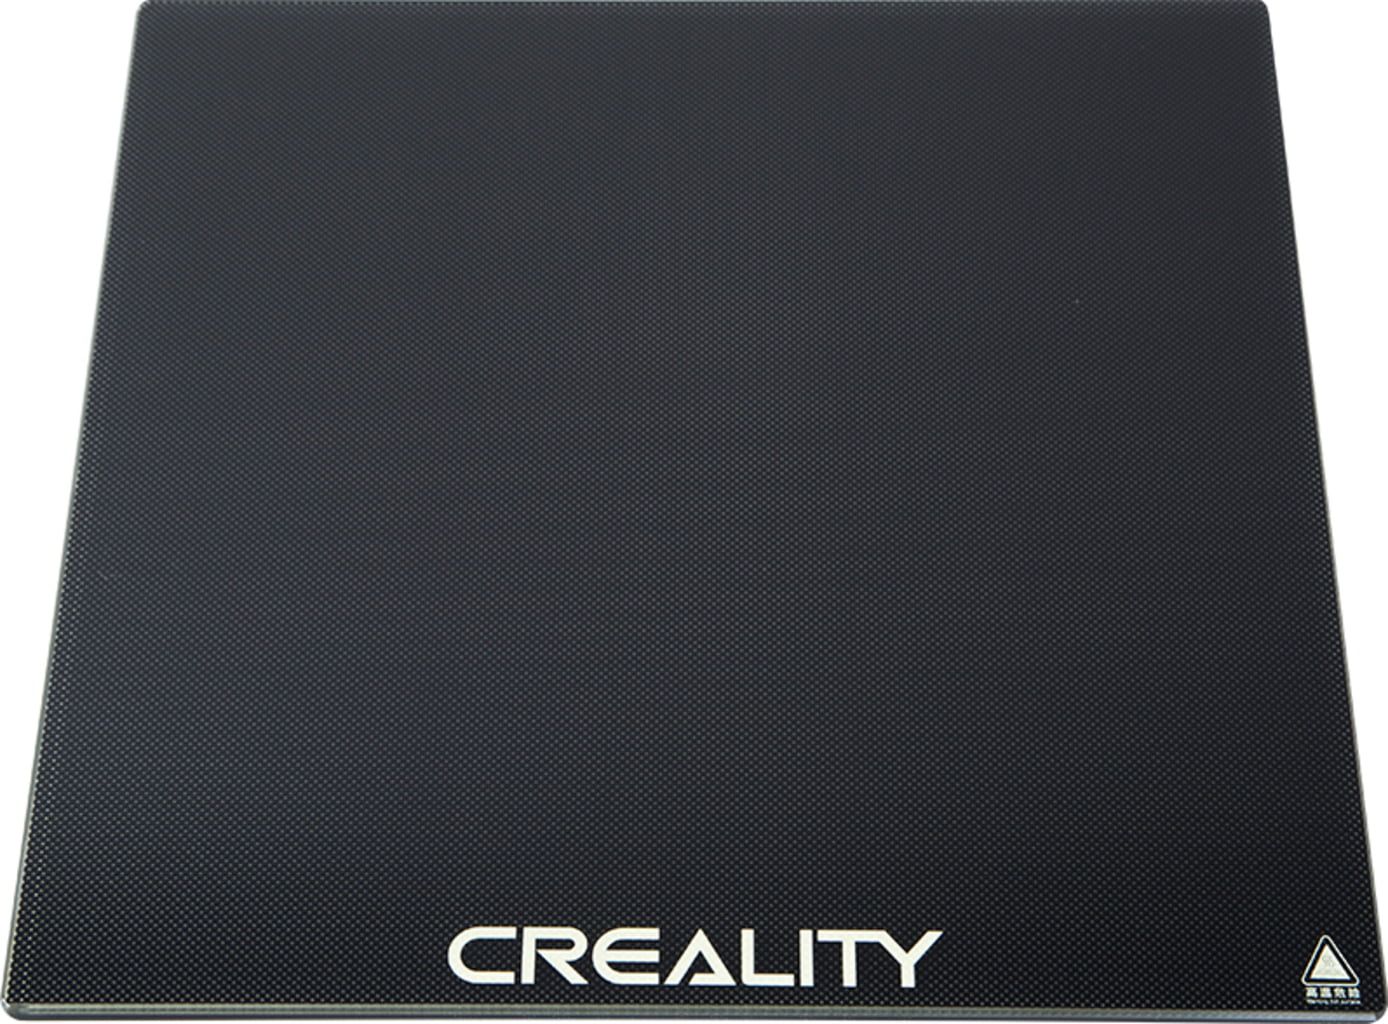 Creality Carborundum üveglap - Ender 3